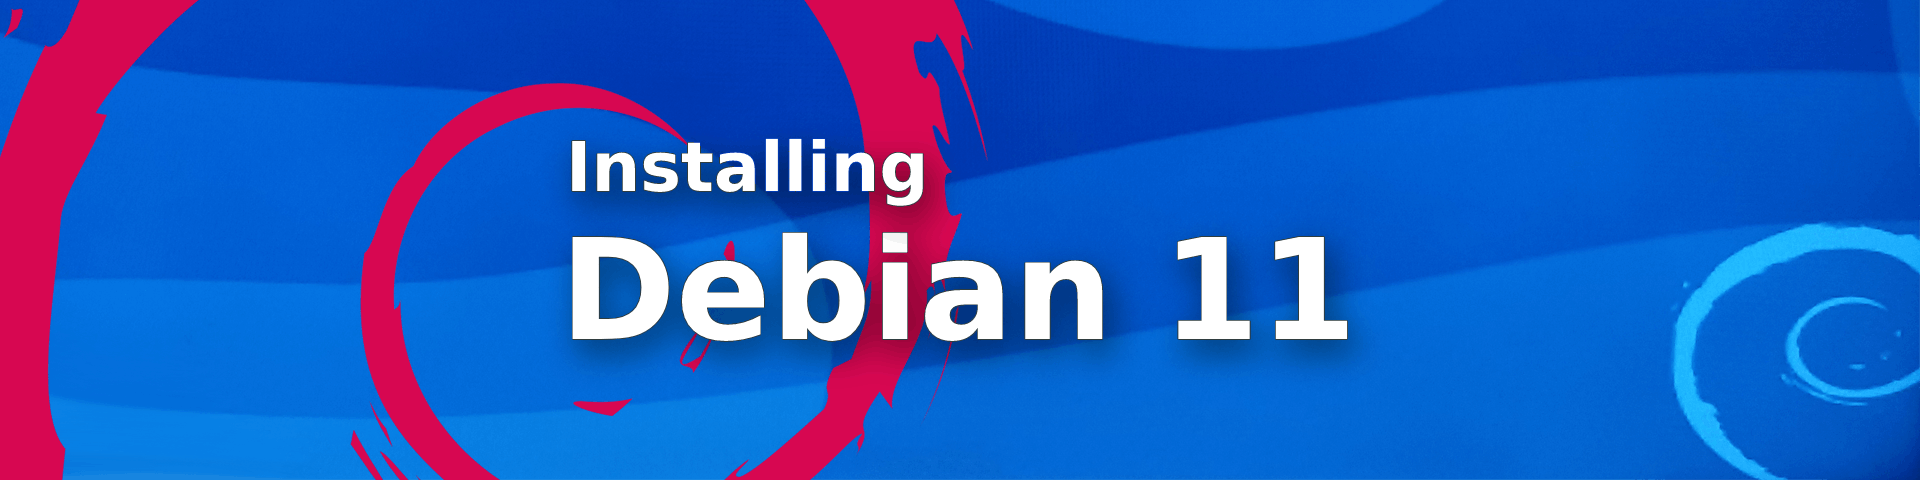 Installing Debian 11 from scratch